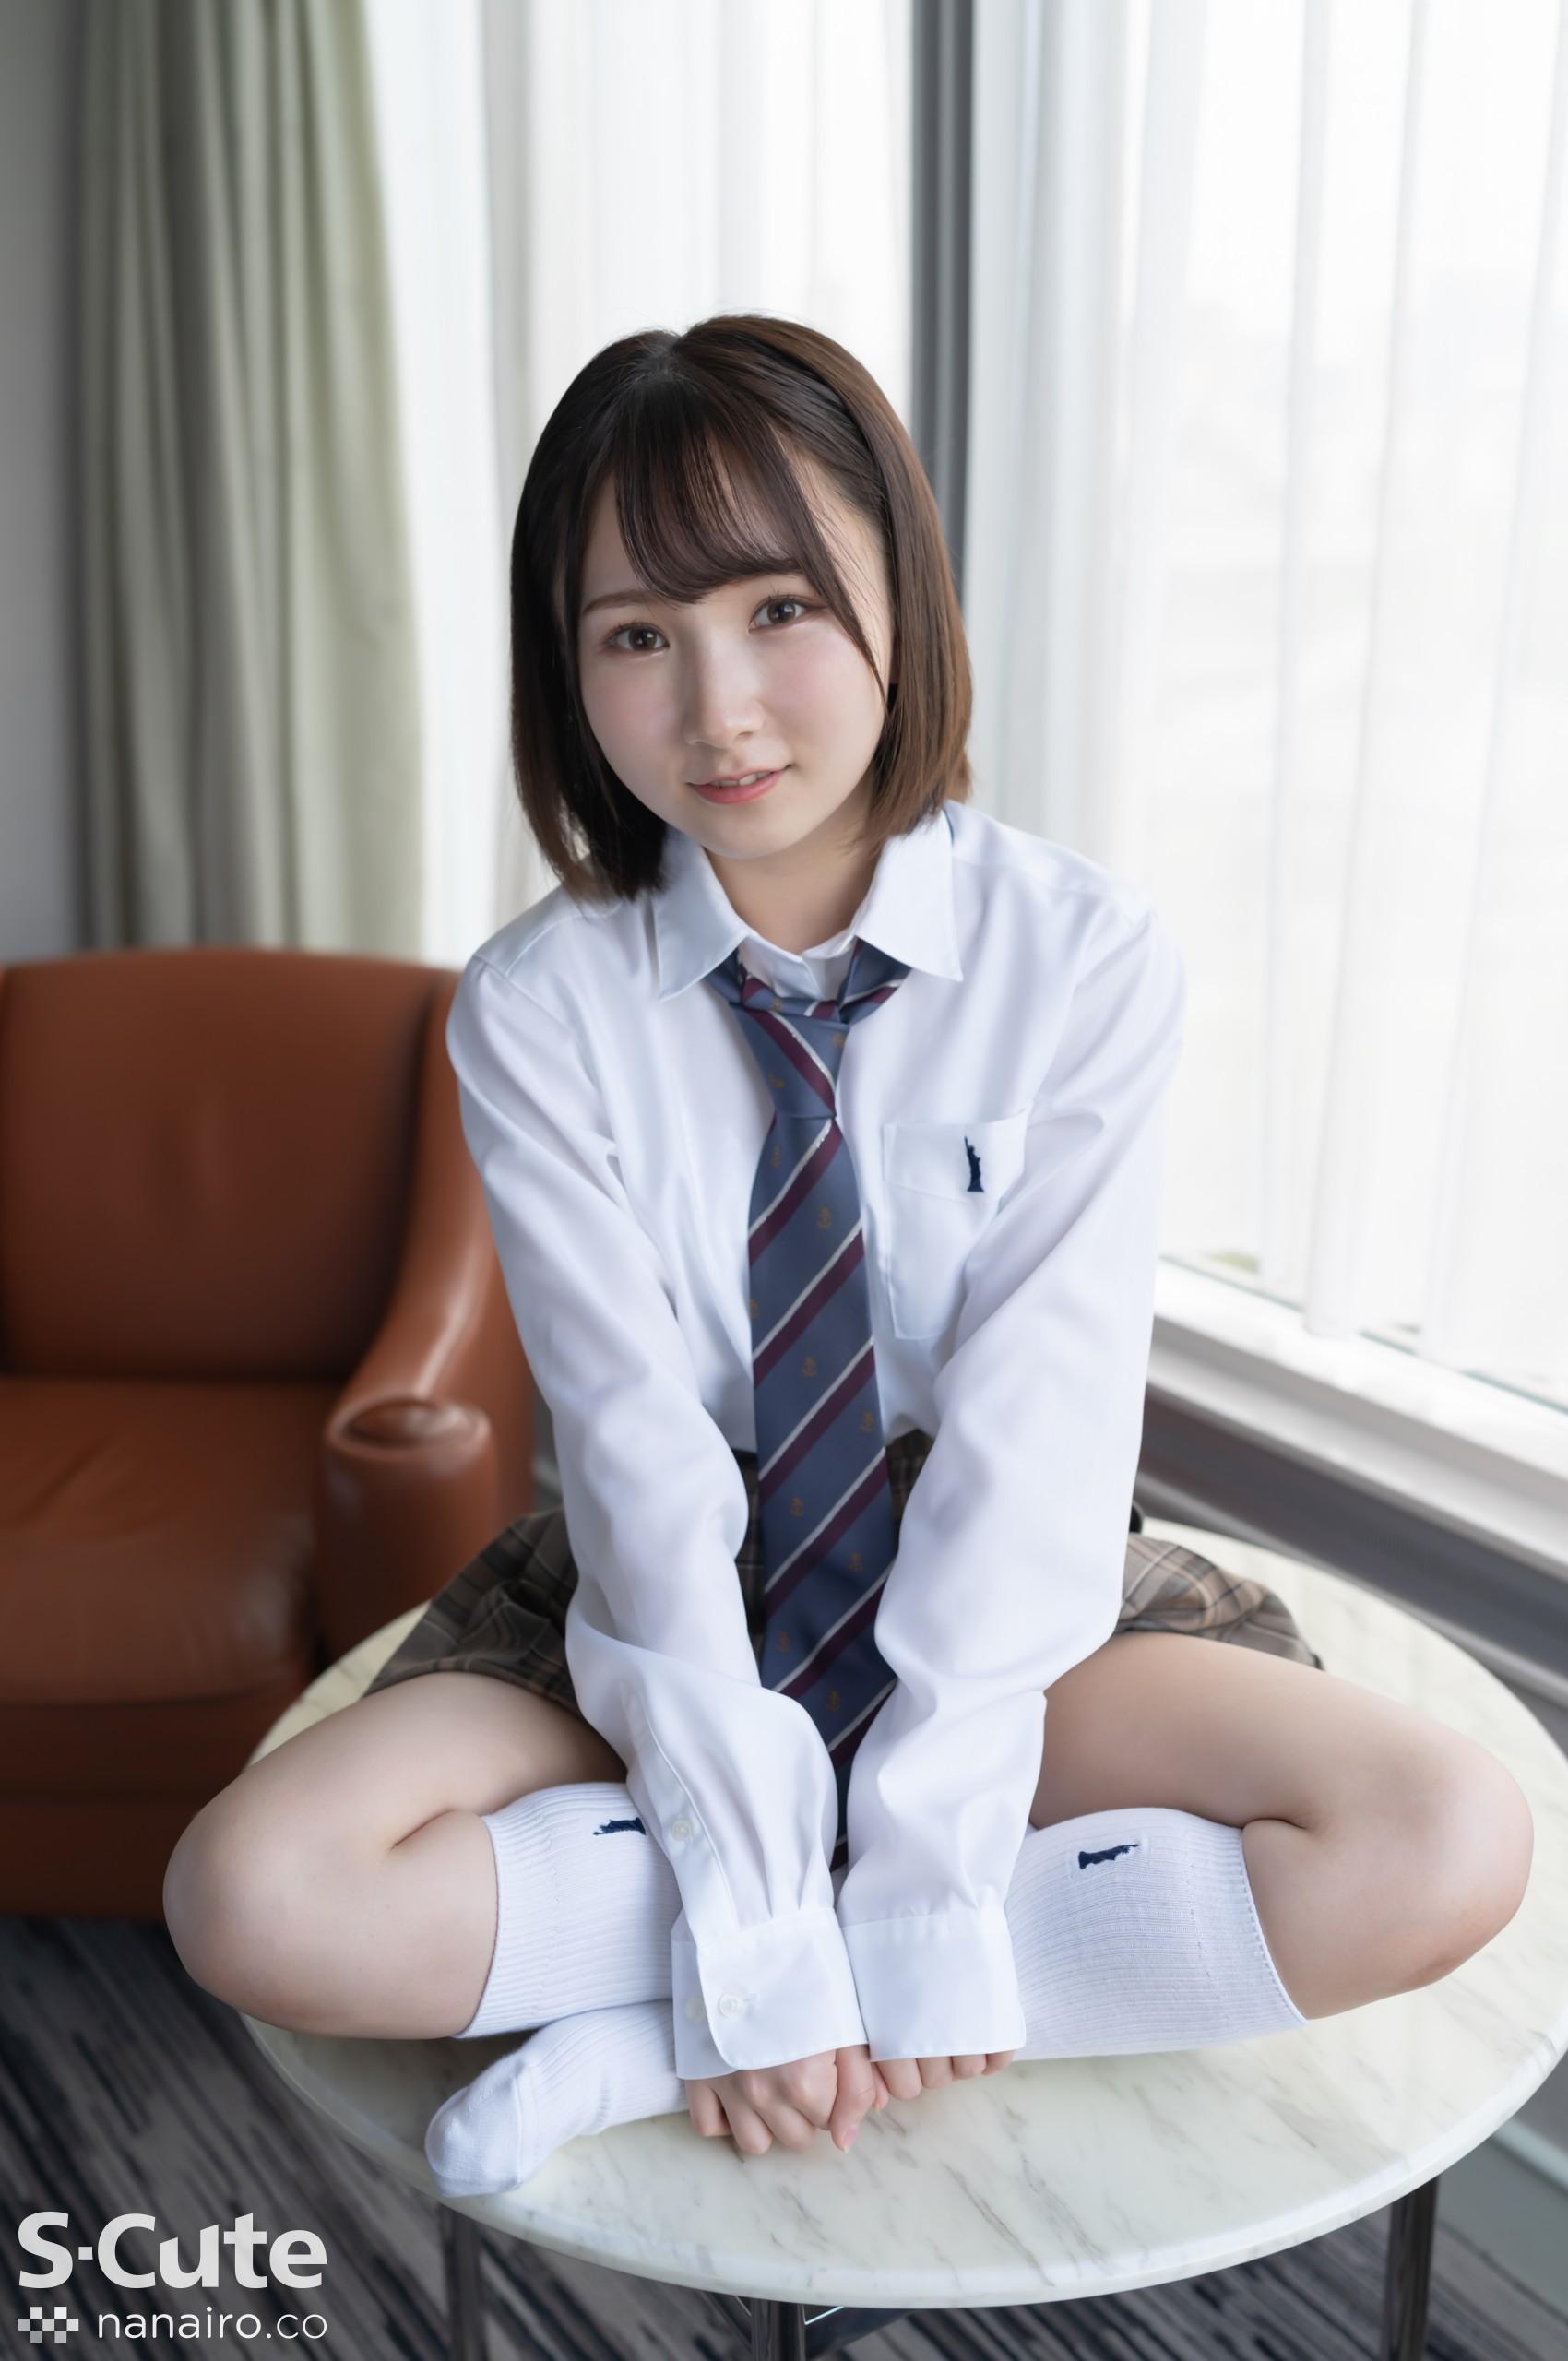 S-Cute 922_kana_02 Adult SEX / Kana zu einem uniformschönen Mädchen, das nur im aktiven Dienst zu sehen ist